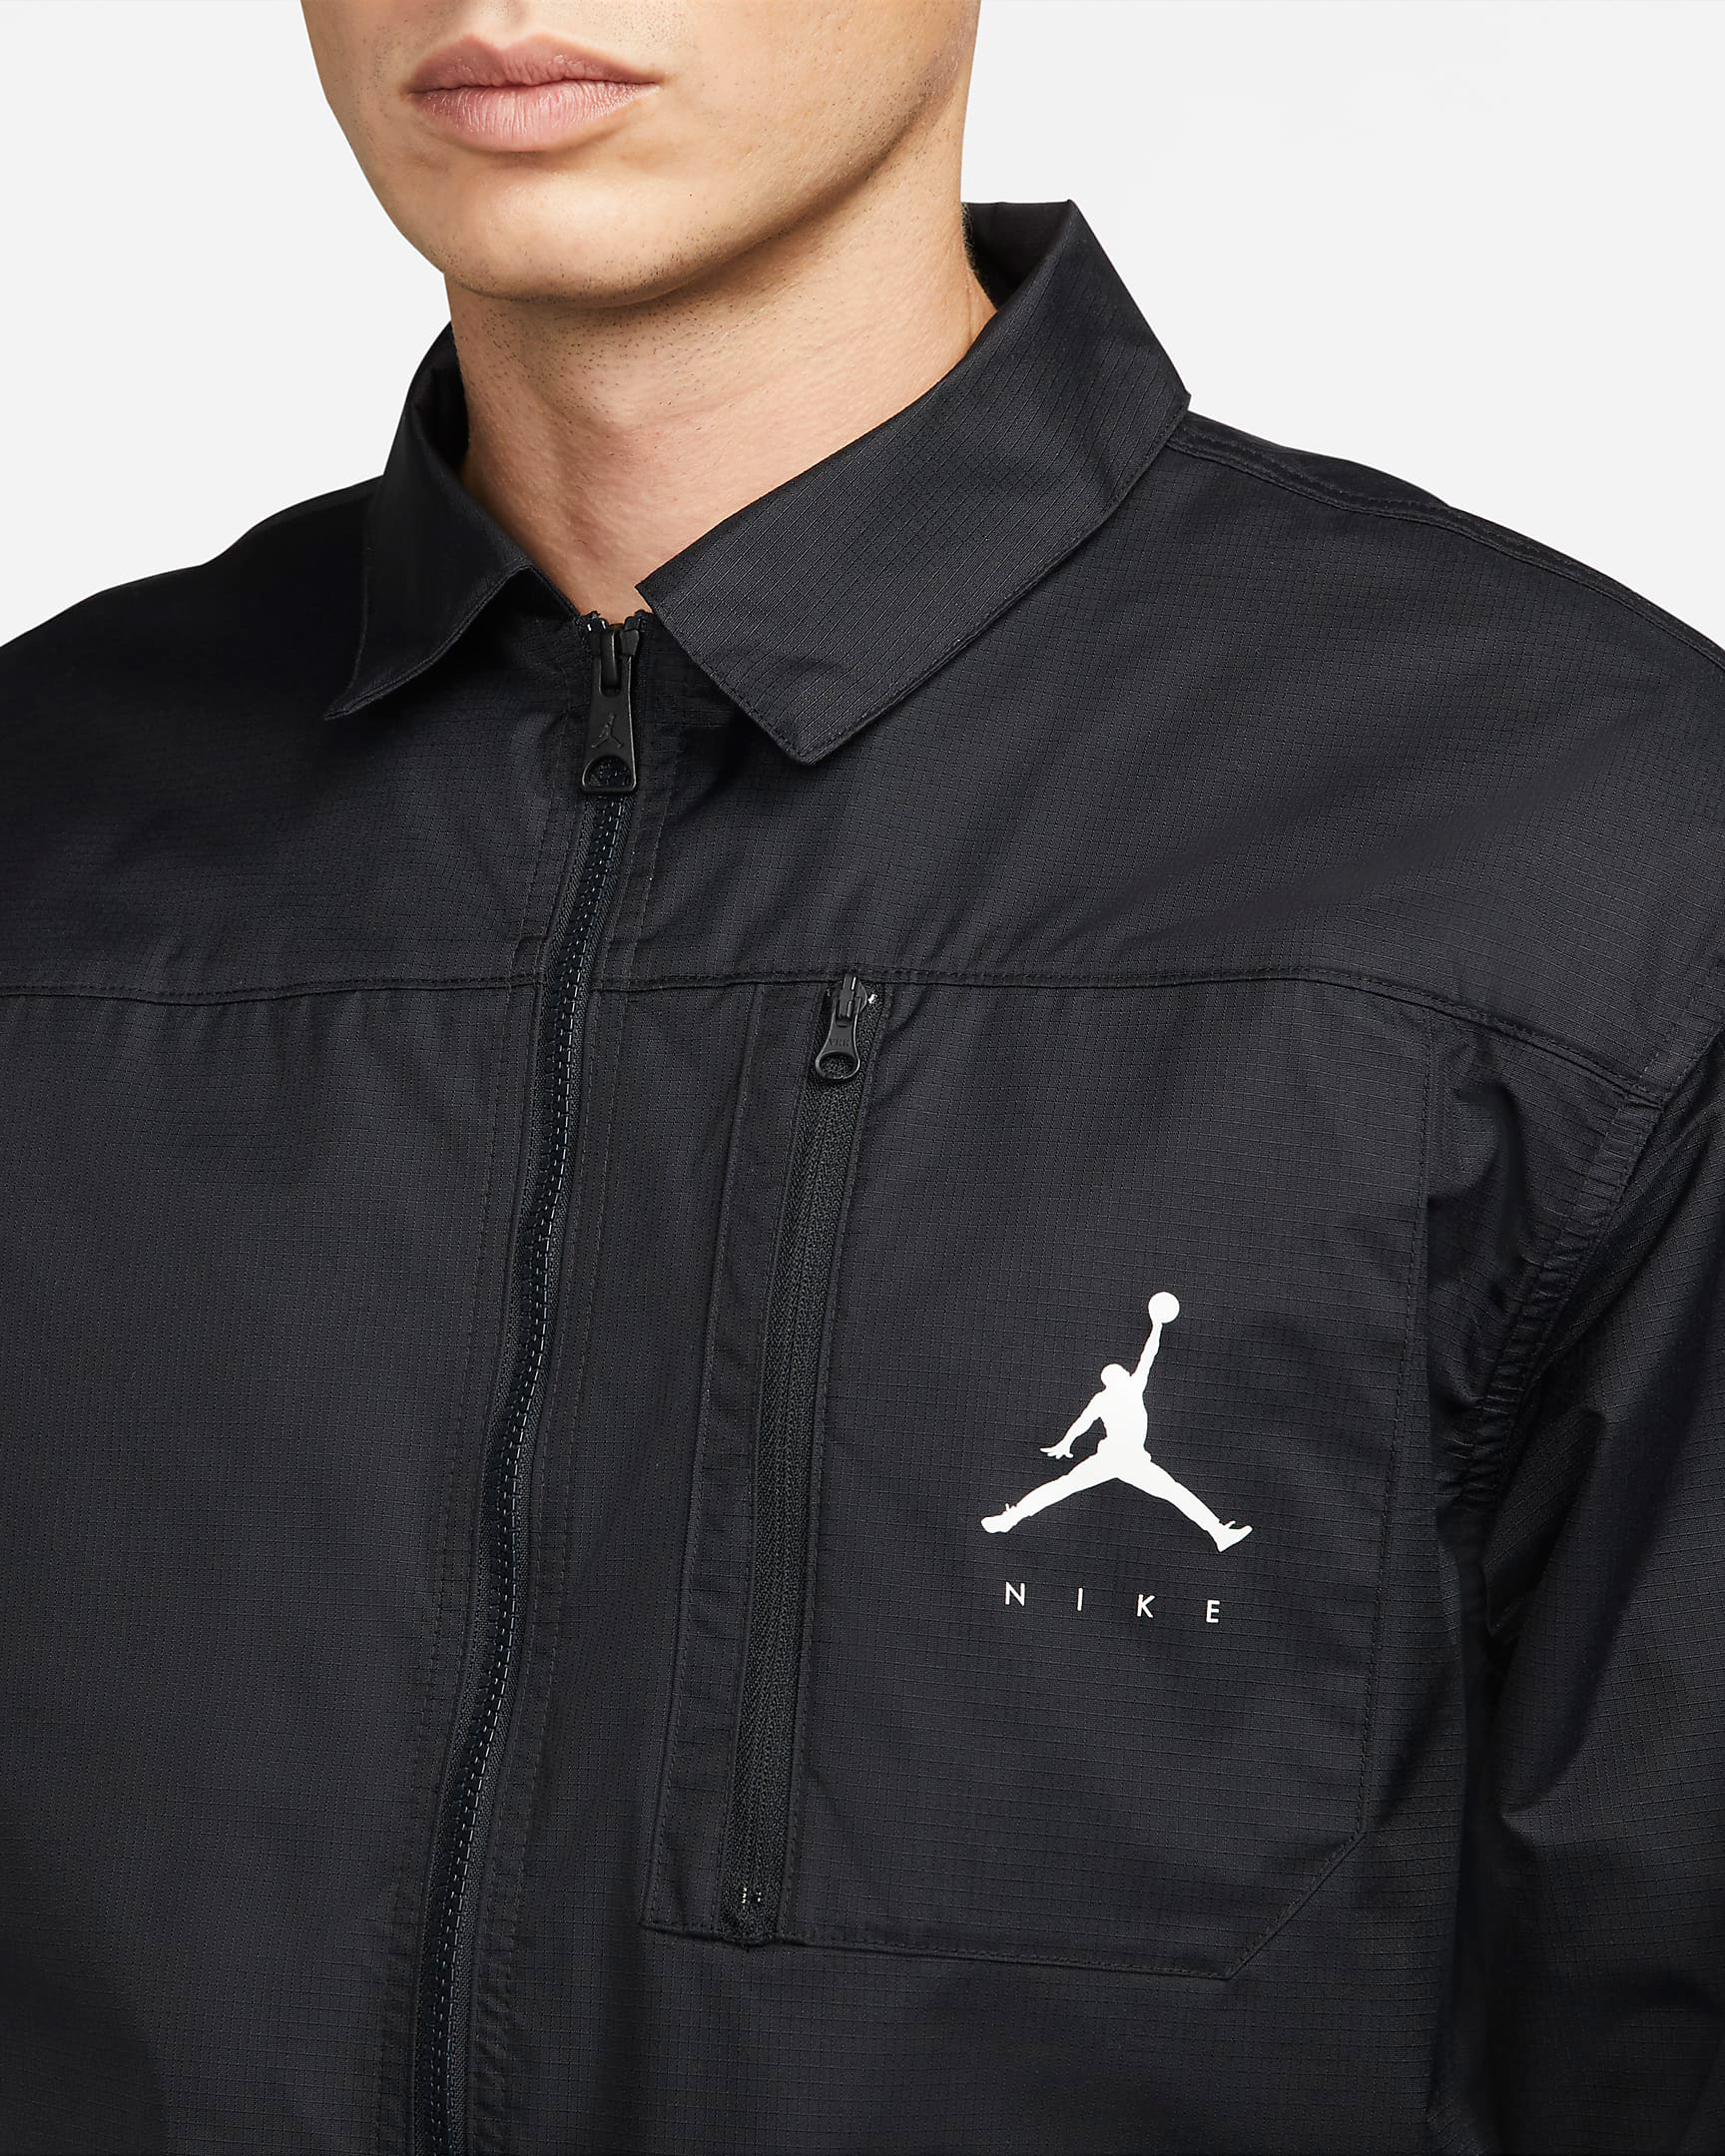 Air Jordan 12 Playoffs Jumpman Full Zip Jacket